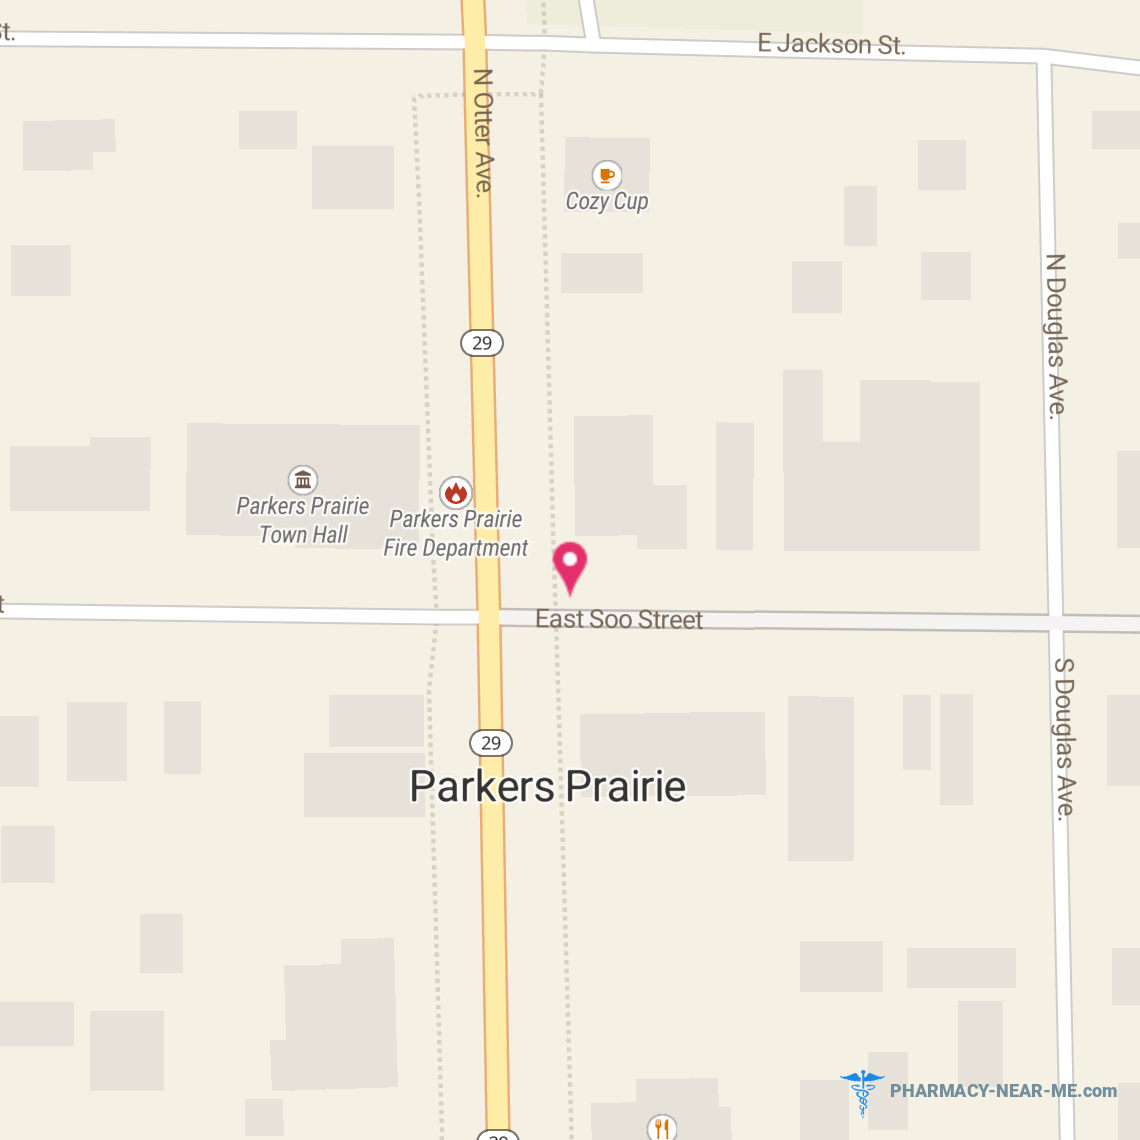 TRUMM DRUG PARKERS PRAIRIE - Pharmacy Hours, Phone, Reviews & Information: 114 East Soo Street, Parkers Prairie, Minnesota 56361, United States